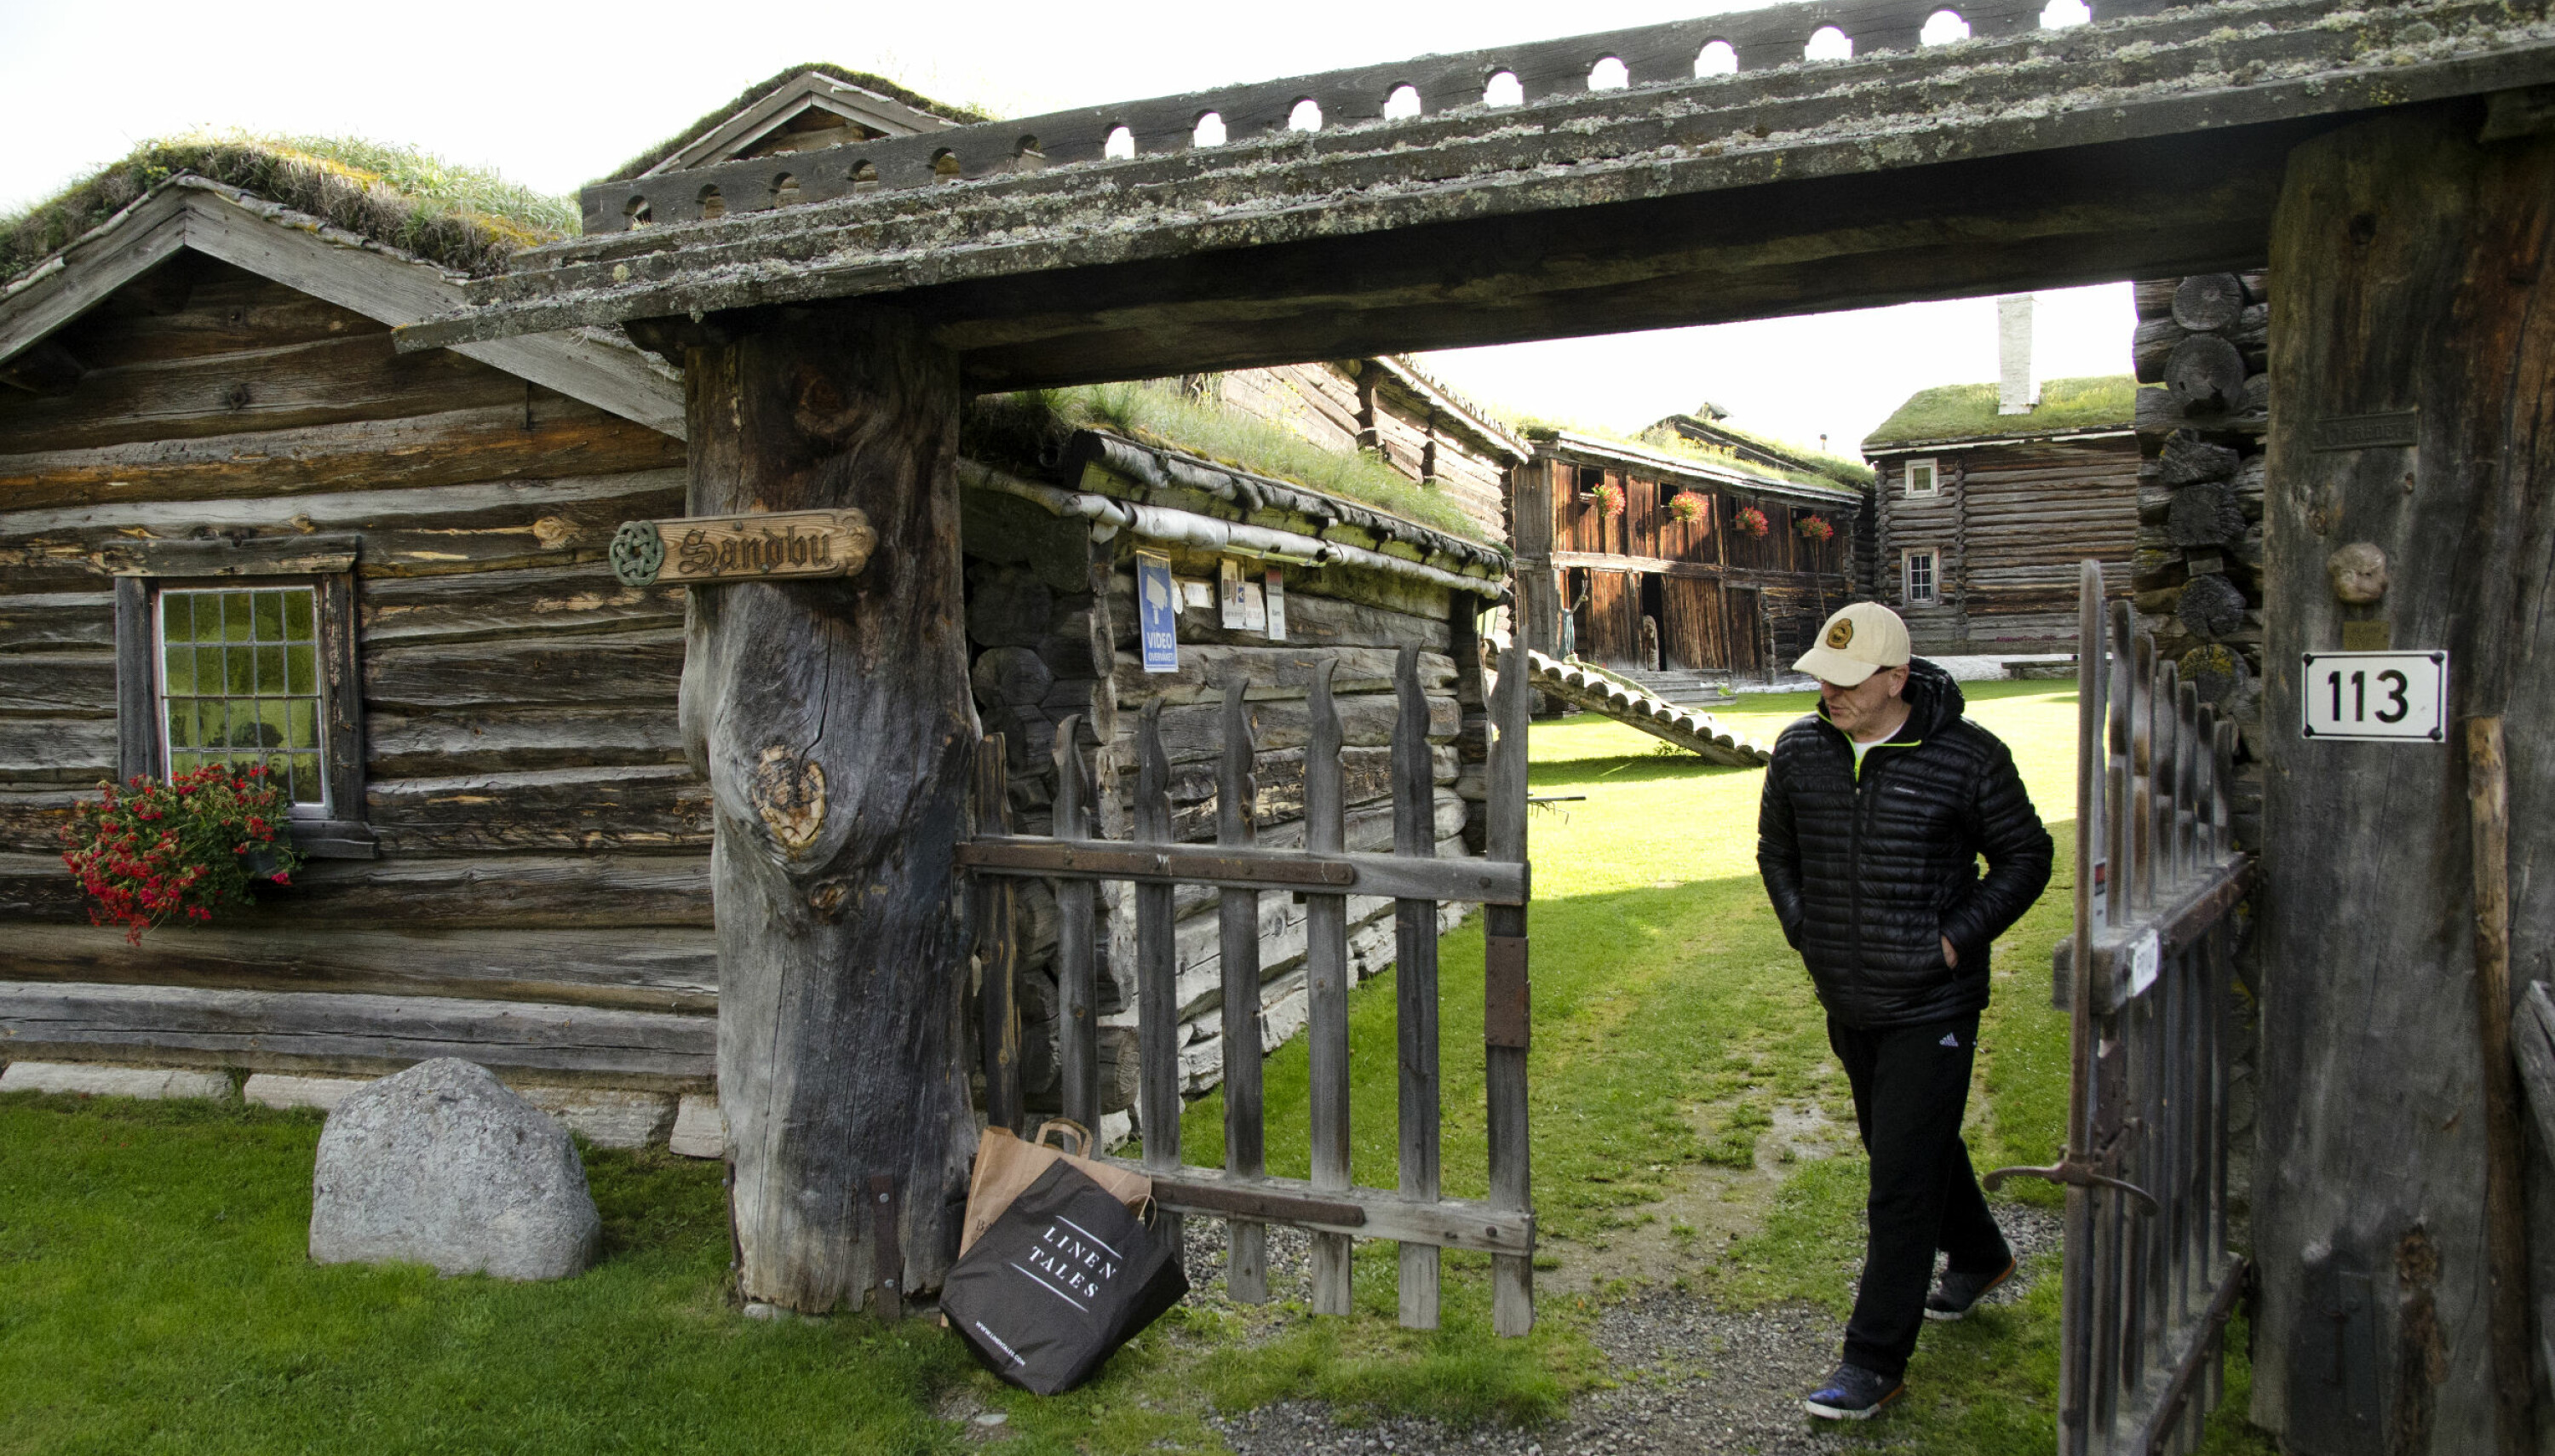 Sandbu gård er fredet og blir beskrevet som en av de aller best bevarte middelaldergårdene i Norge. Den nye eieren lover at han skal ta godt vare på sitt nye hjem.